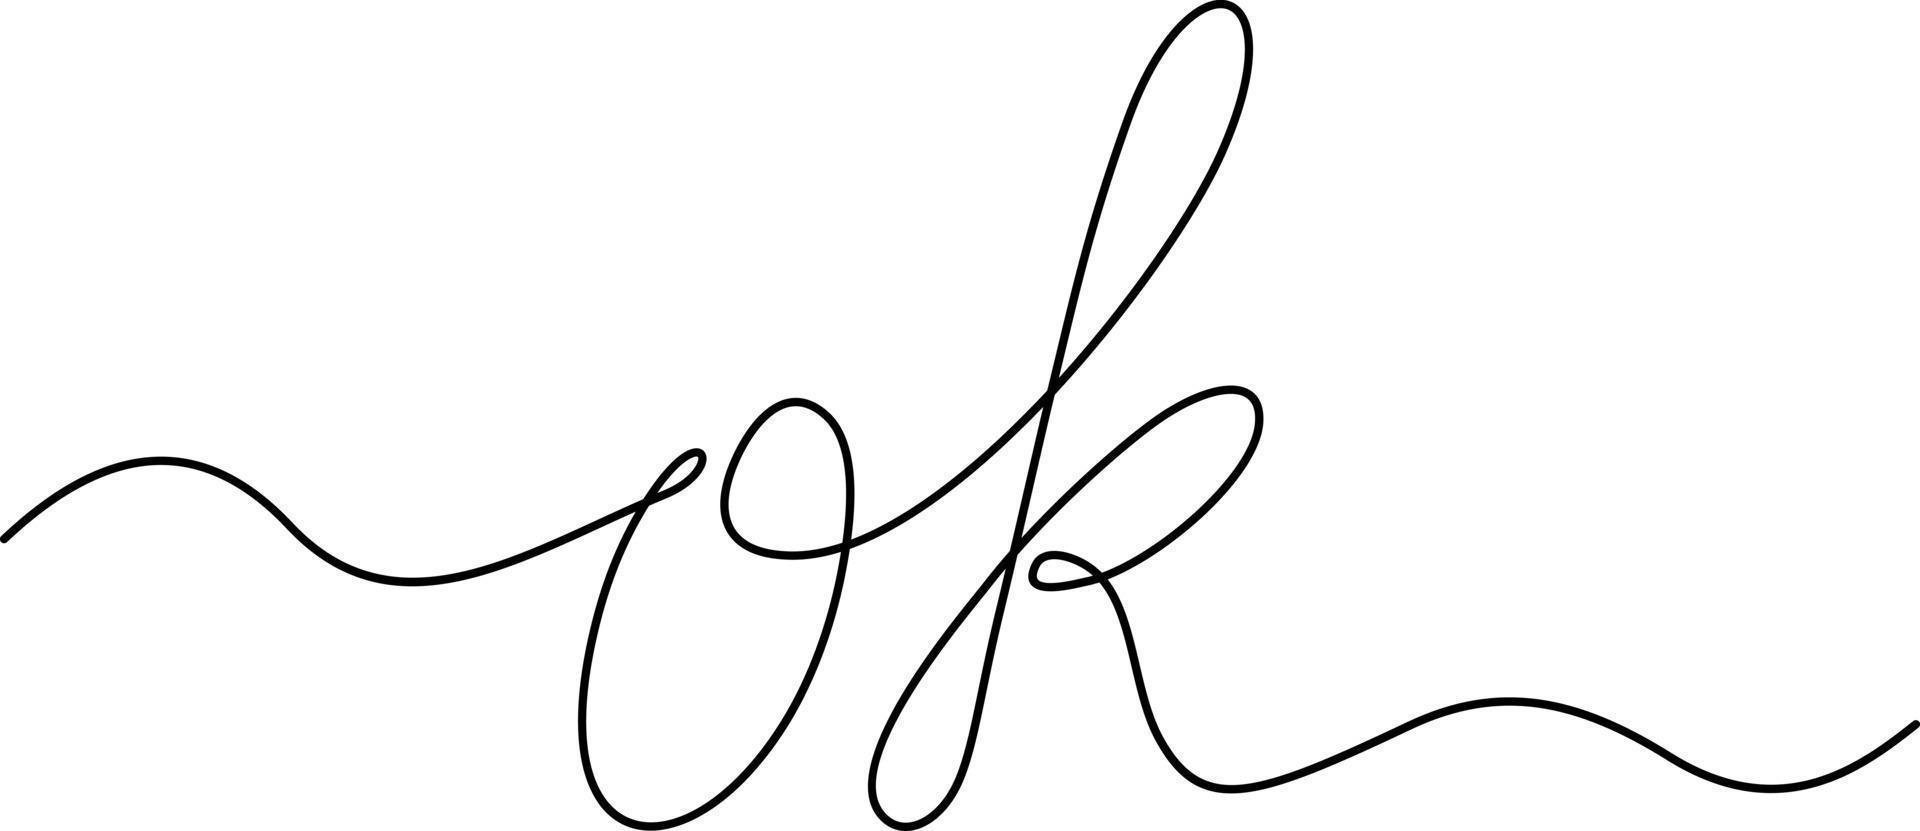 um desenho de linha de frase - ok. decisão positiva, caligrafia letras caligrafia gráficos vetoriais ilustração linear minimalista feita de linha única. ok frase motivacional vetor